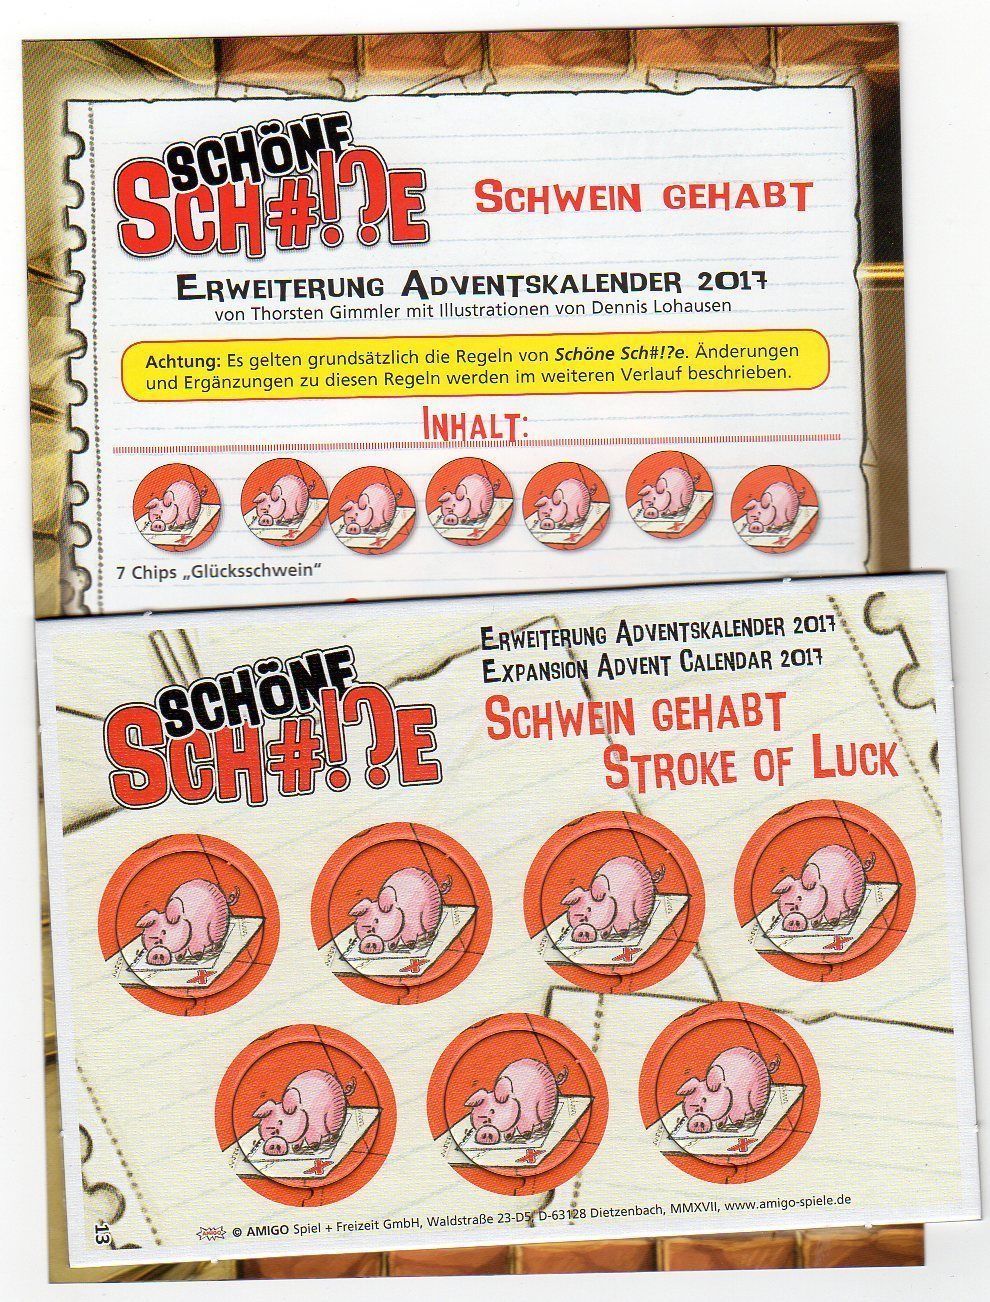 Schöne Sch#!?e: Stroke of Luck